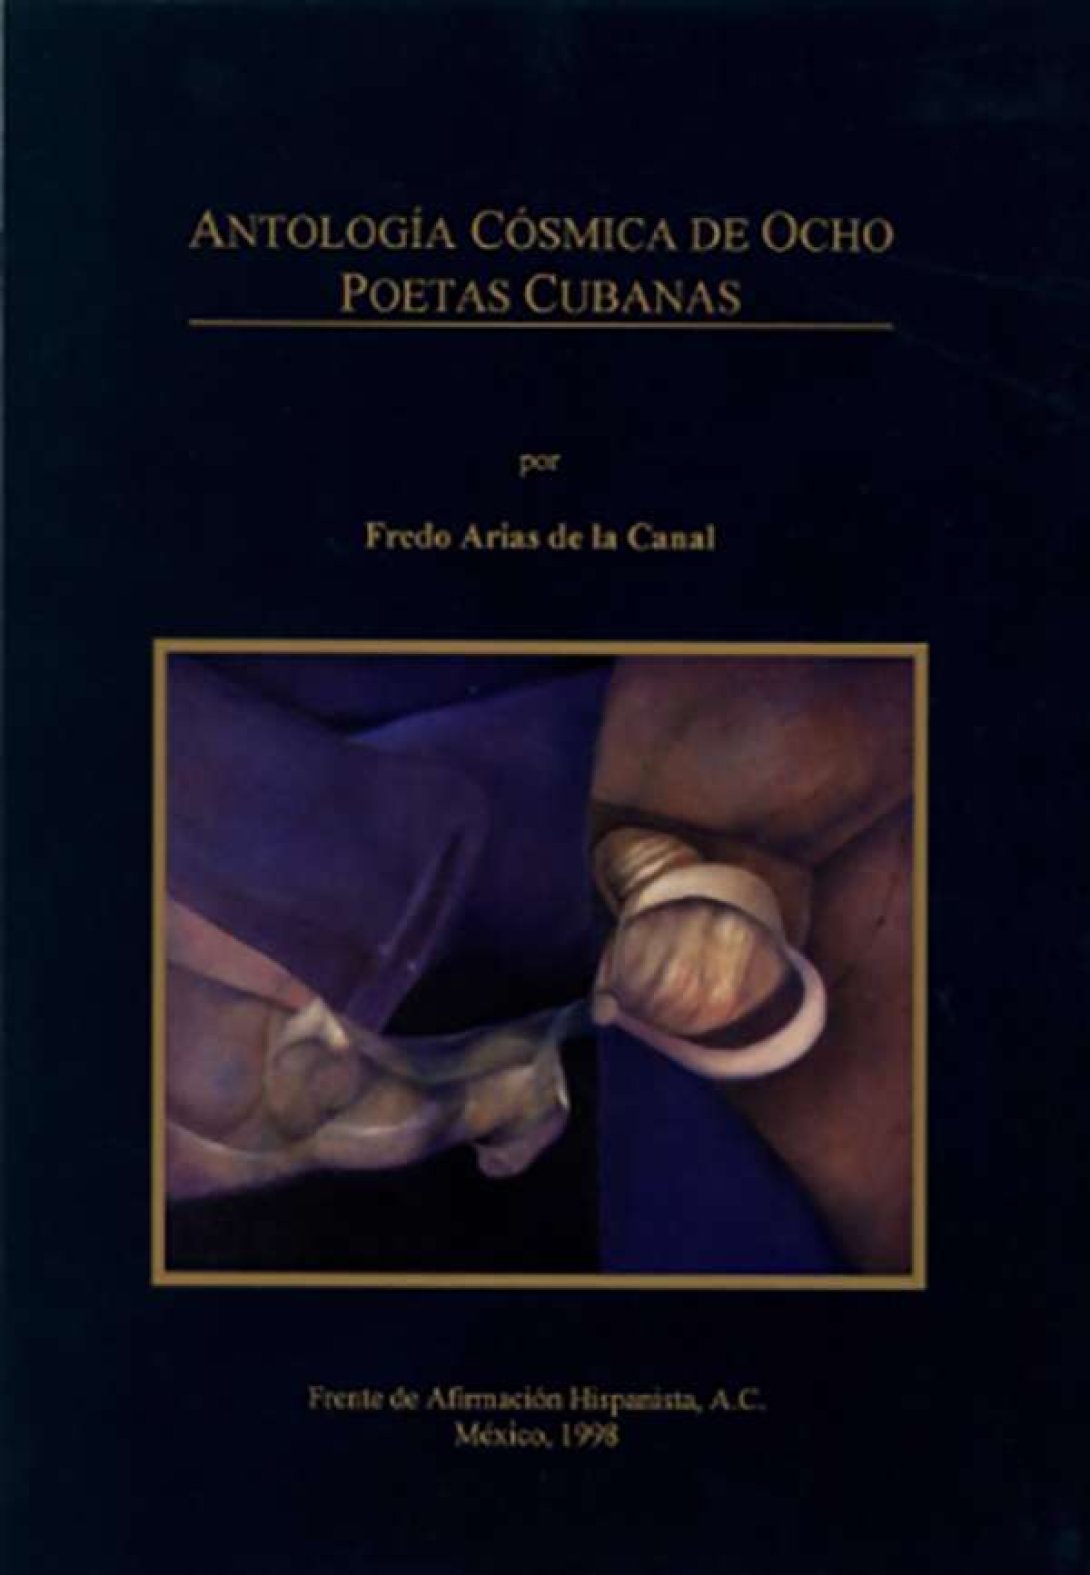 Antología Ocho poetas cubanas (Frente de Afirmación Hispanista, México, 1998)